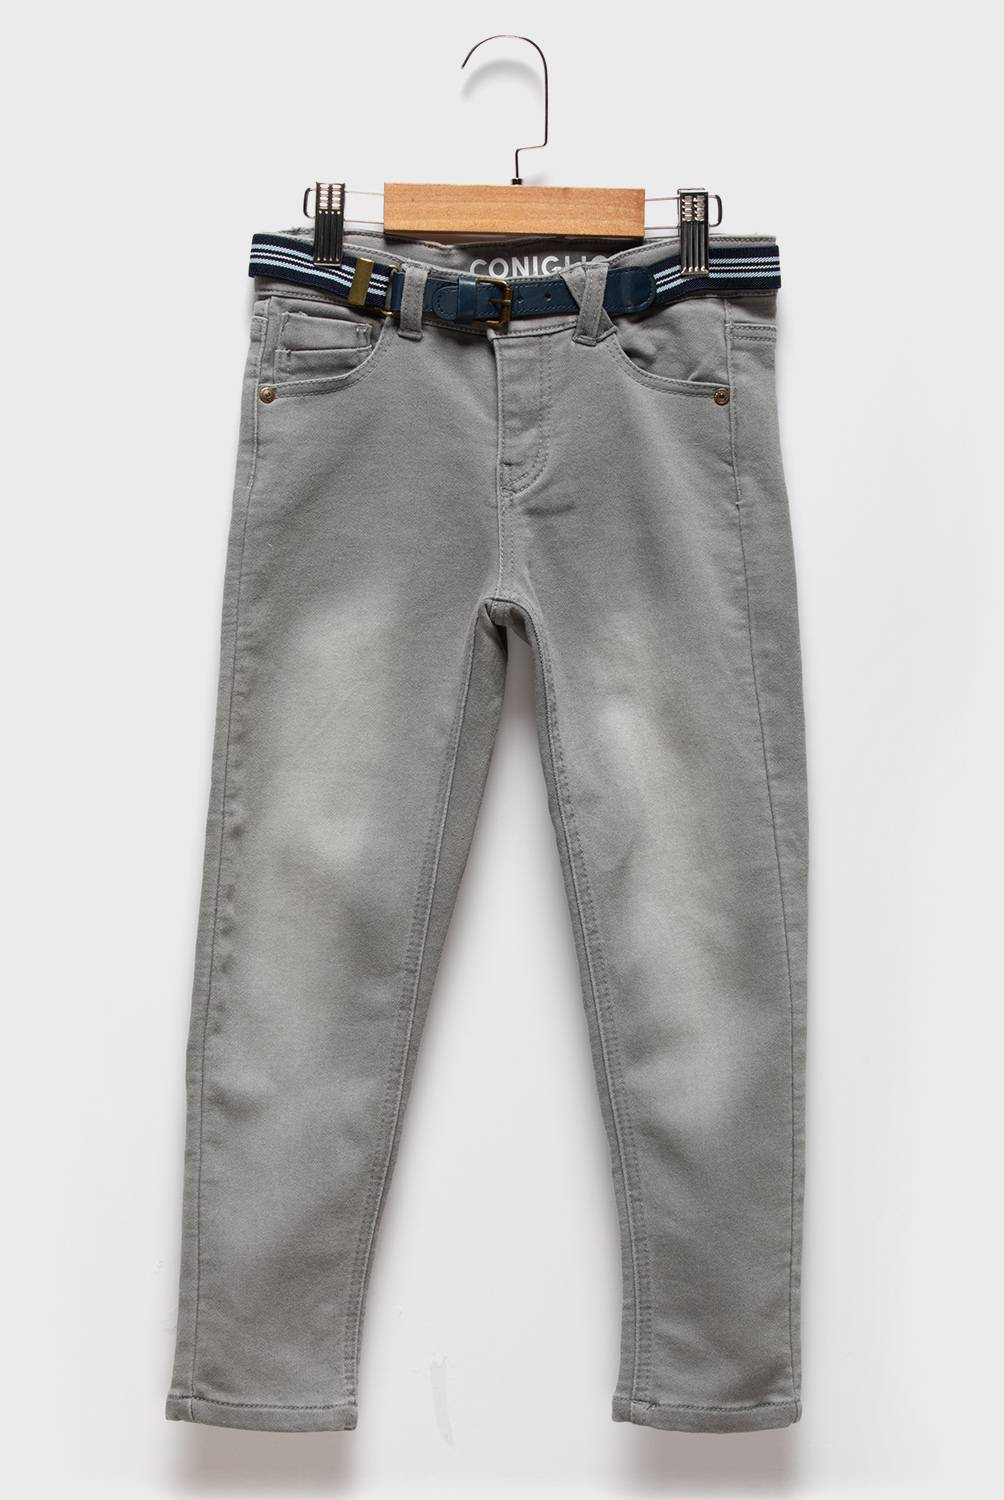 CONIGLIO - Jeans Con cinturón Denim Niño